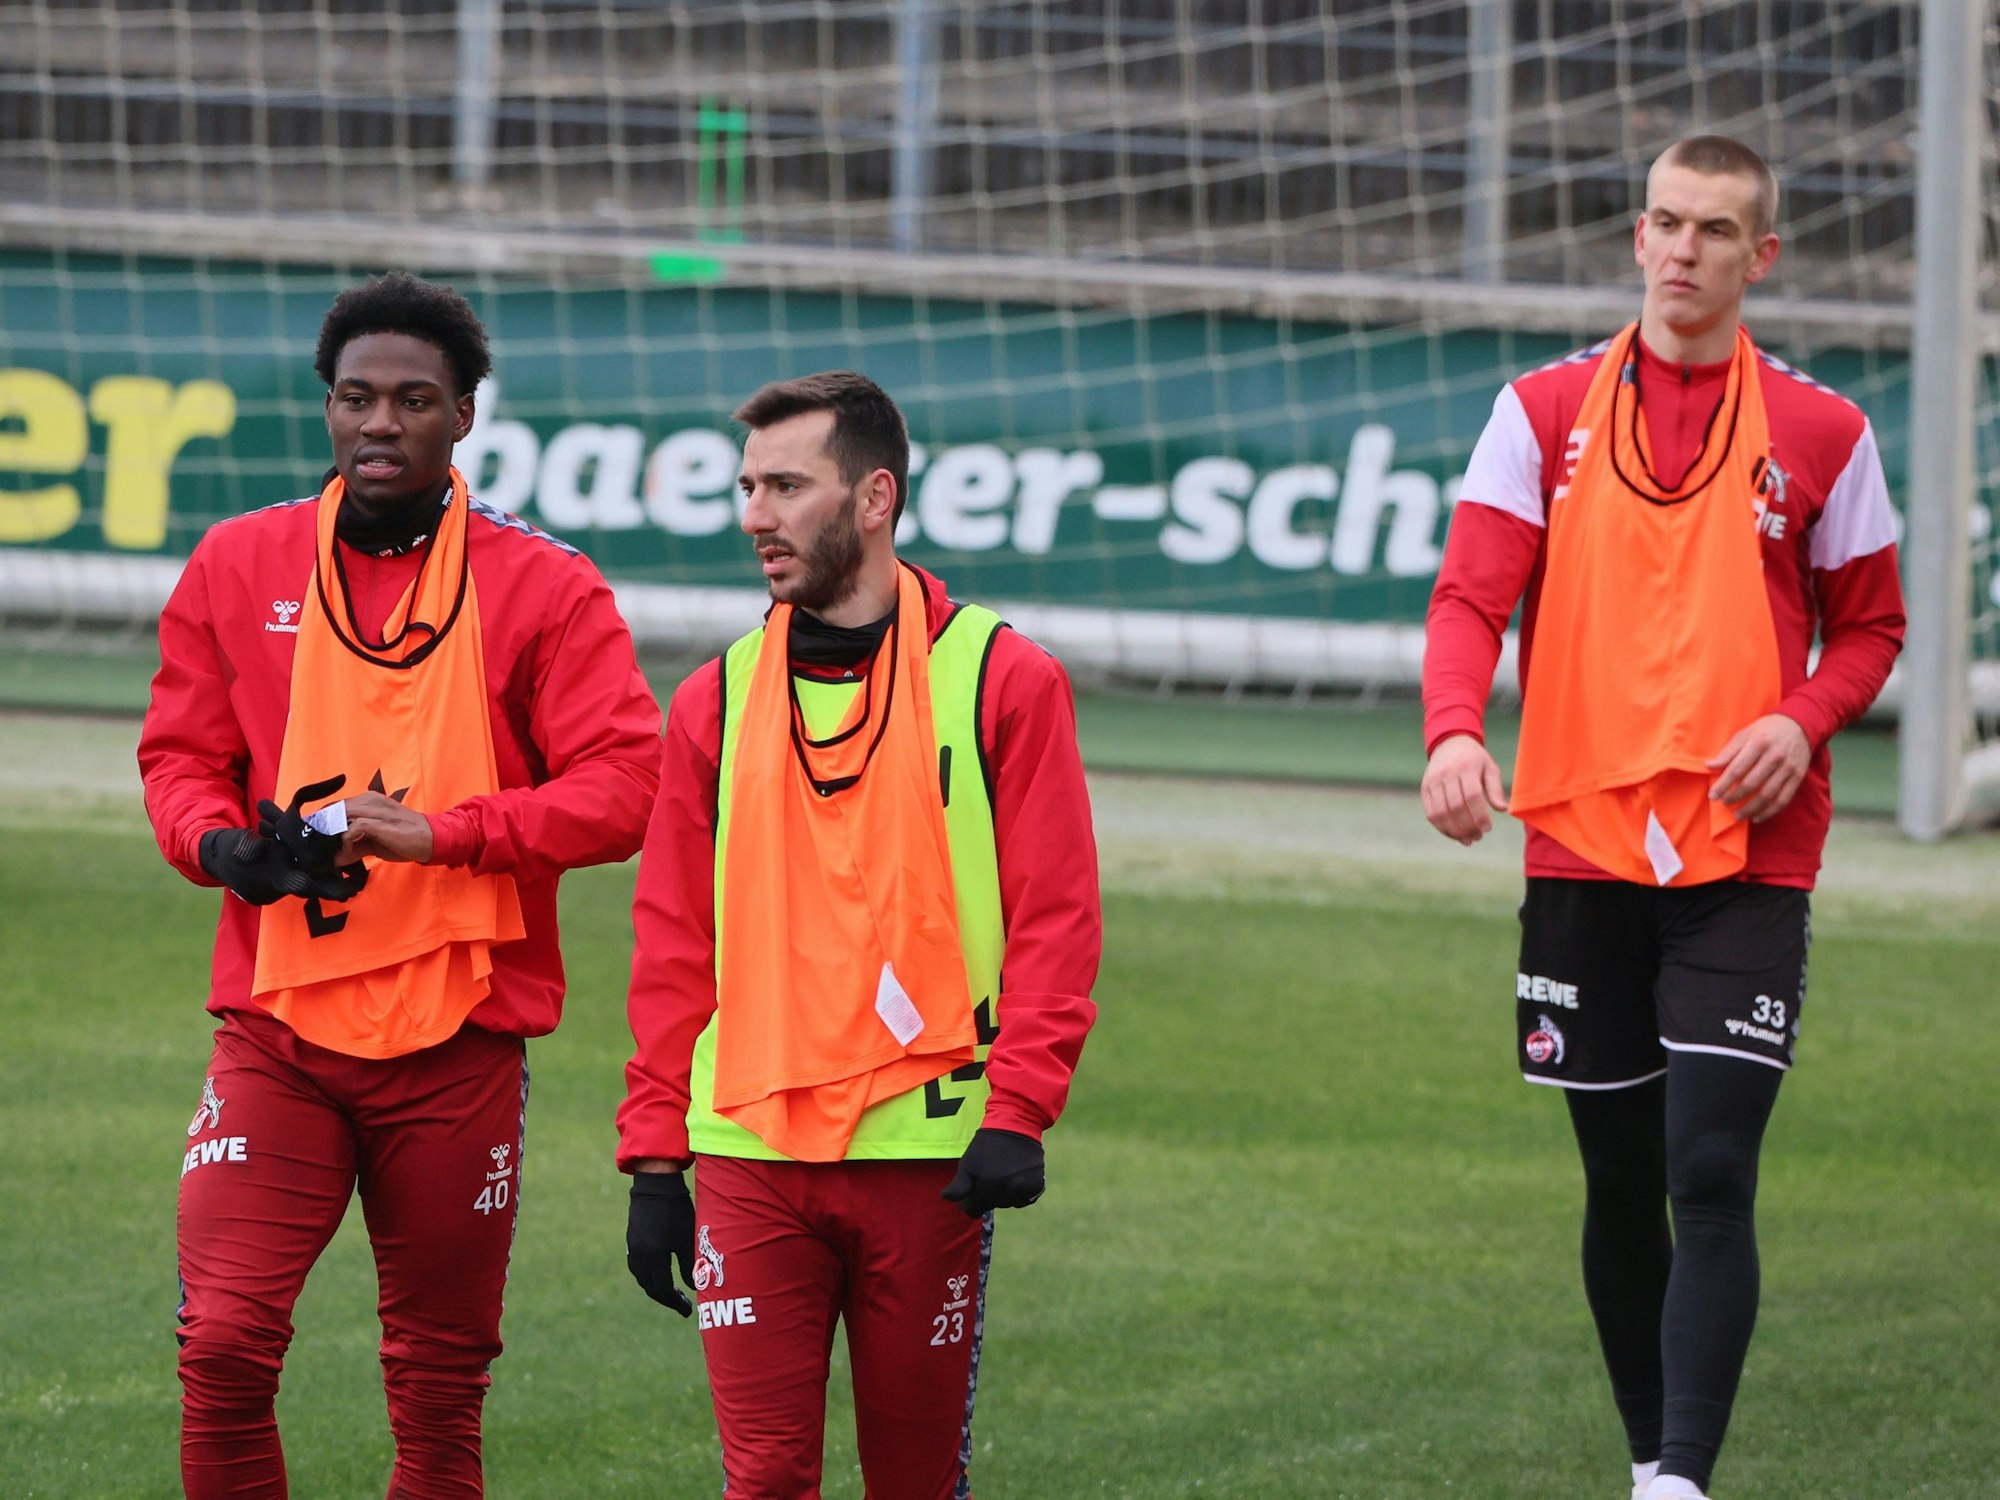 Faride Alidou, Sargis Adamyan und Florian Dietz im Training des 1. FC Köln